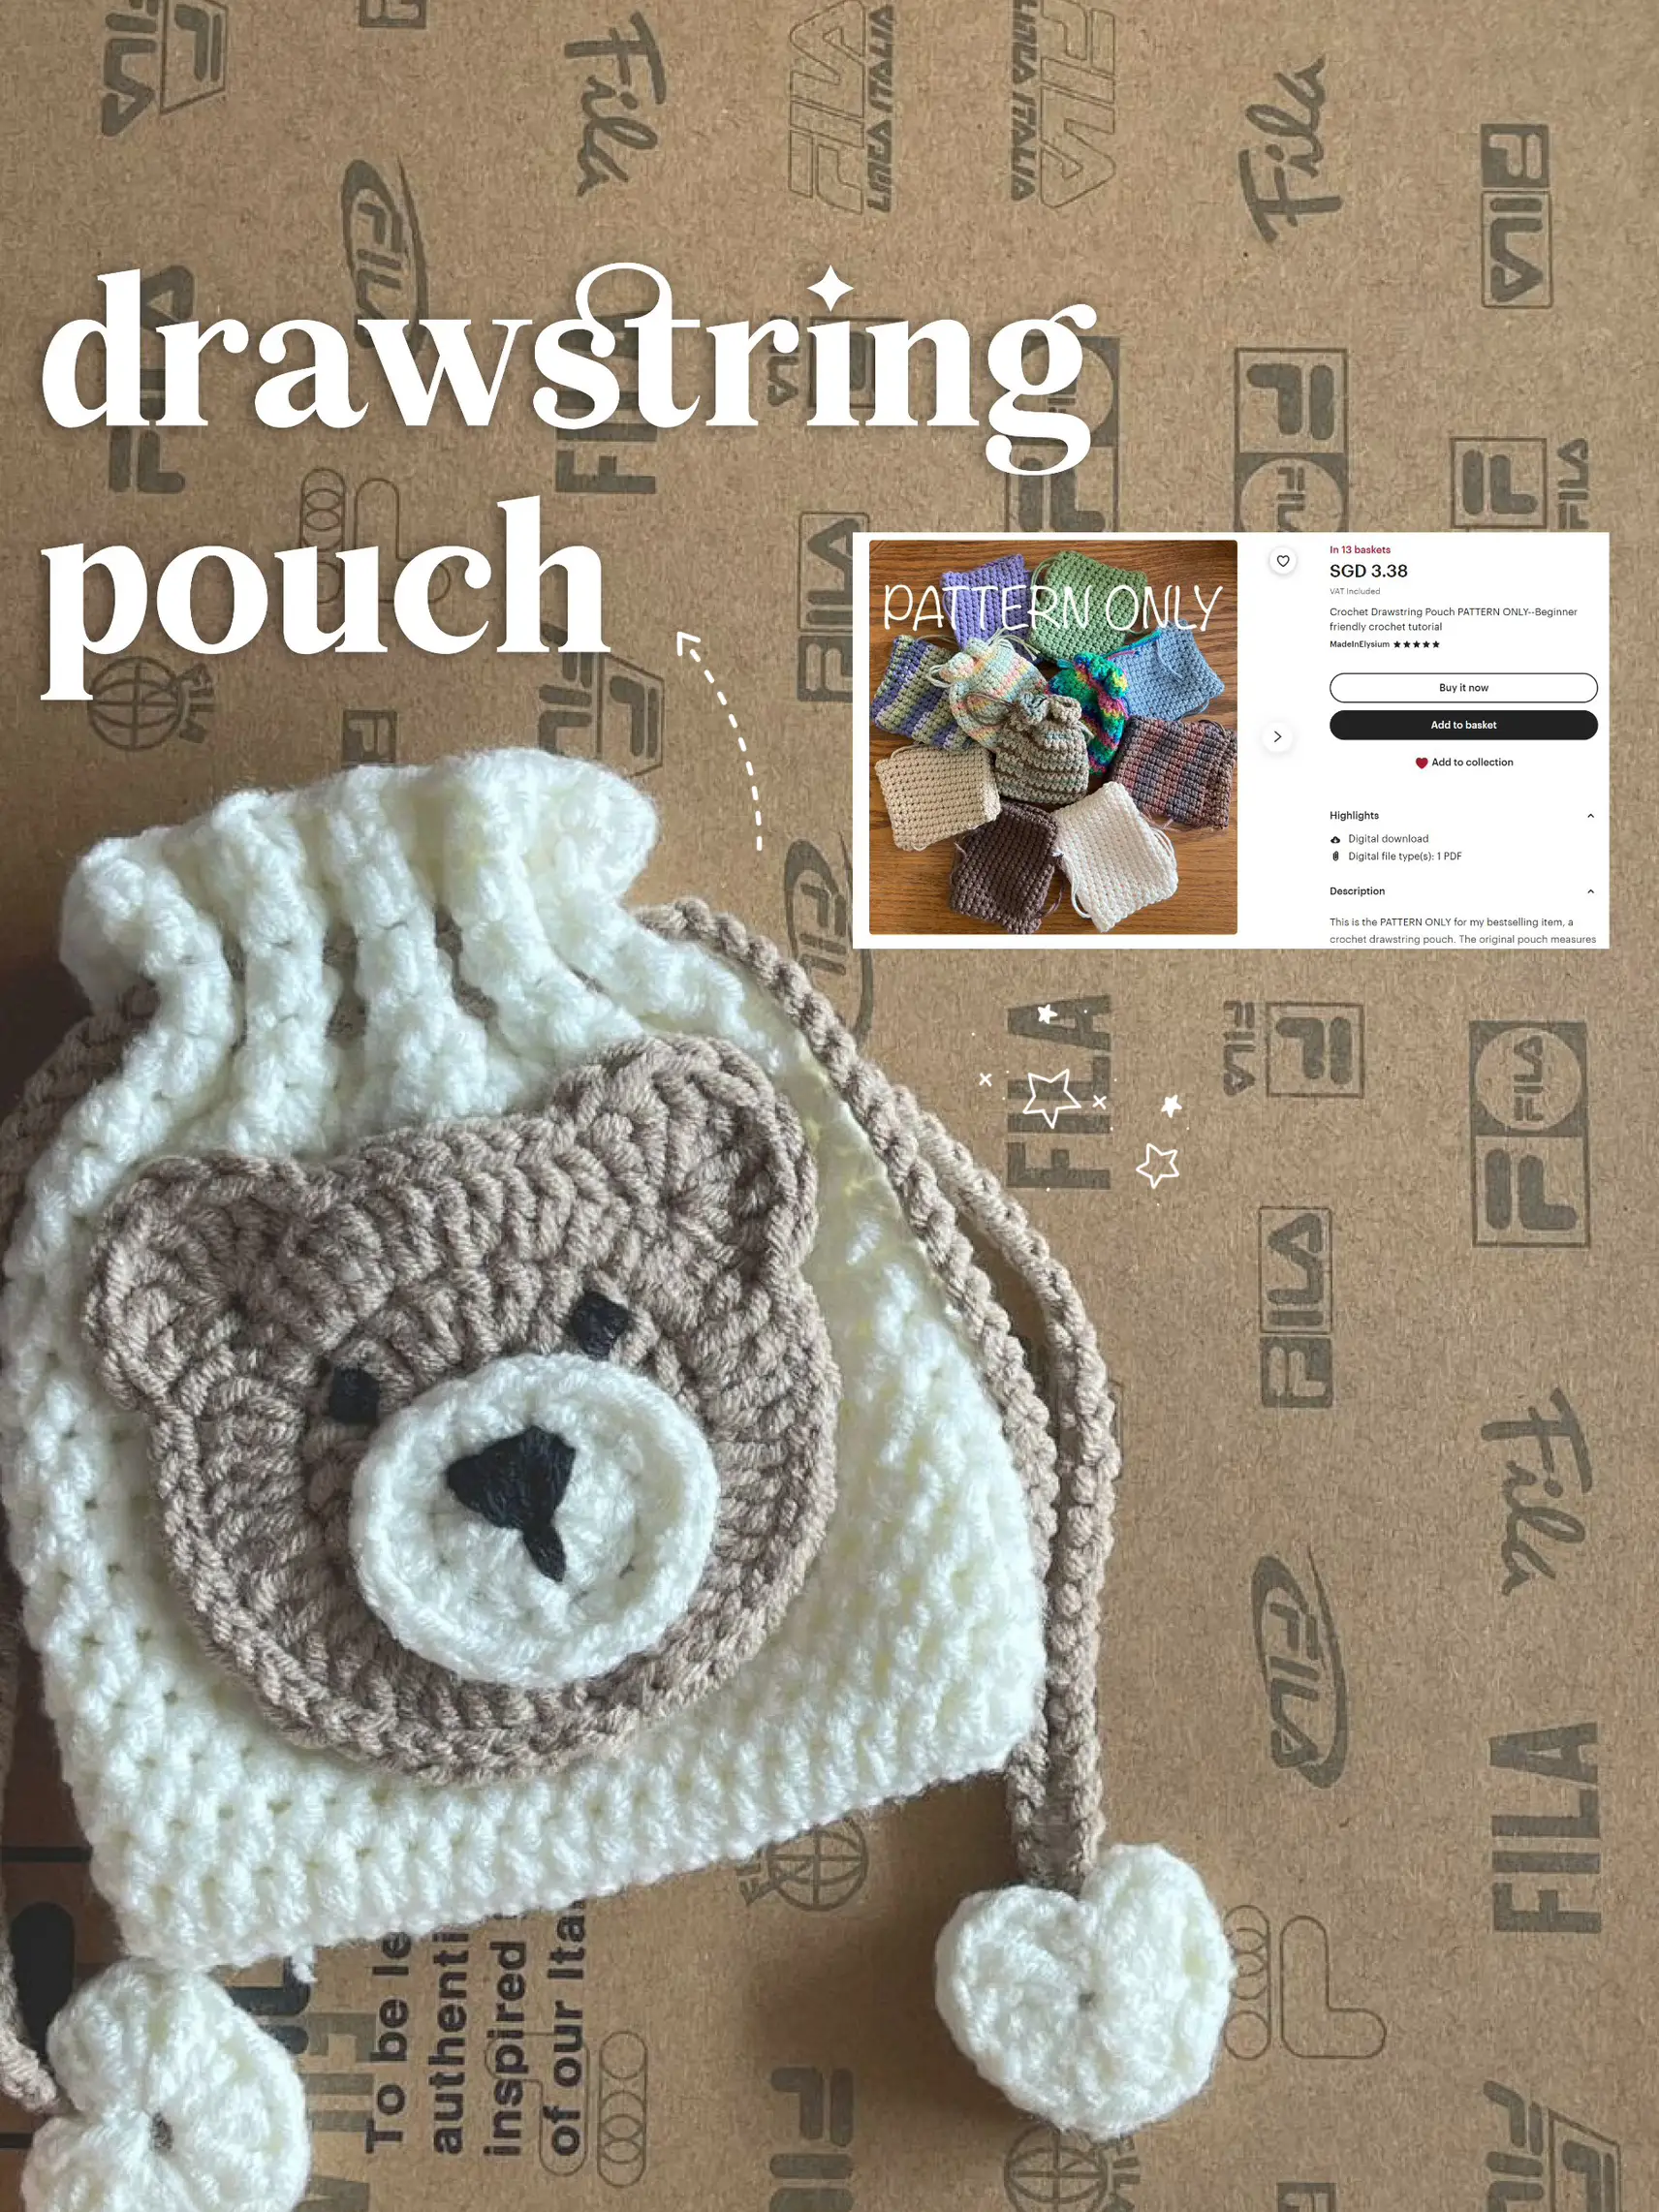 How To Make A Drawstring Bag // DIY Drawstring Bag In 10 Minutes ⋆ Hello  Sewing